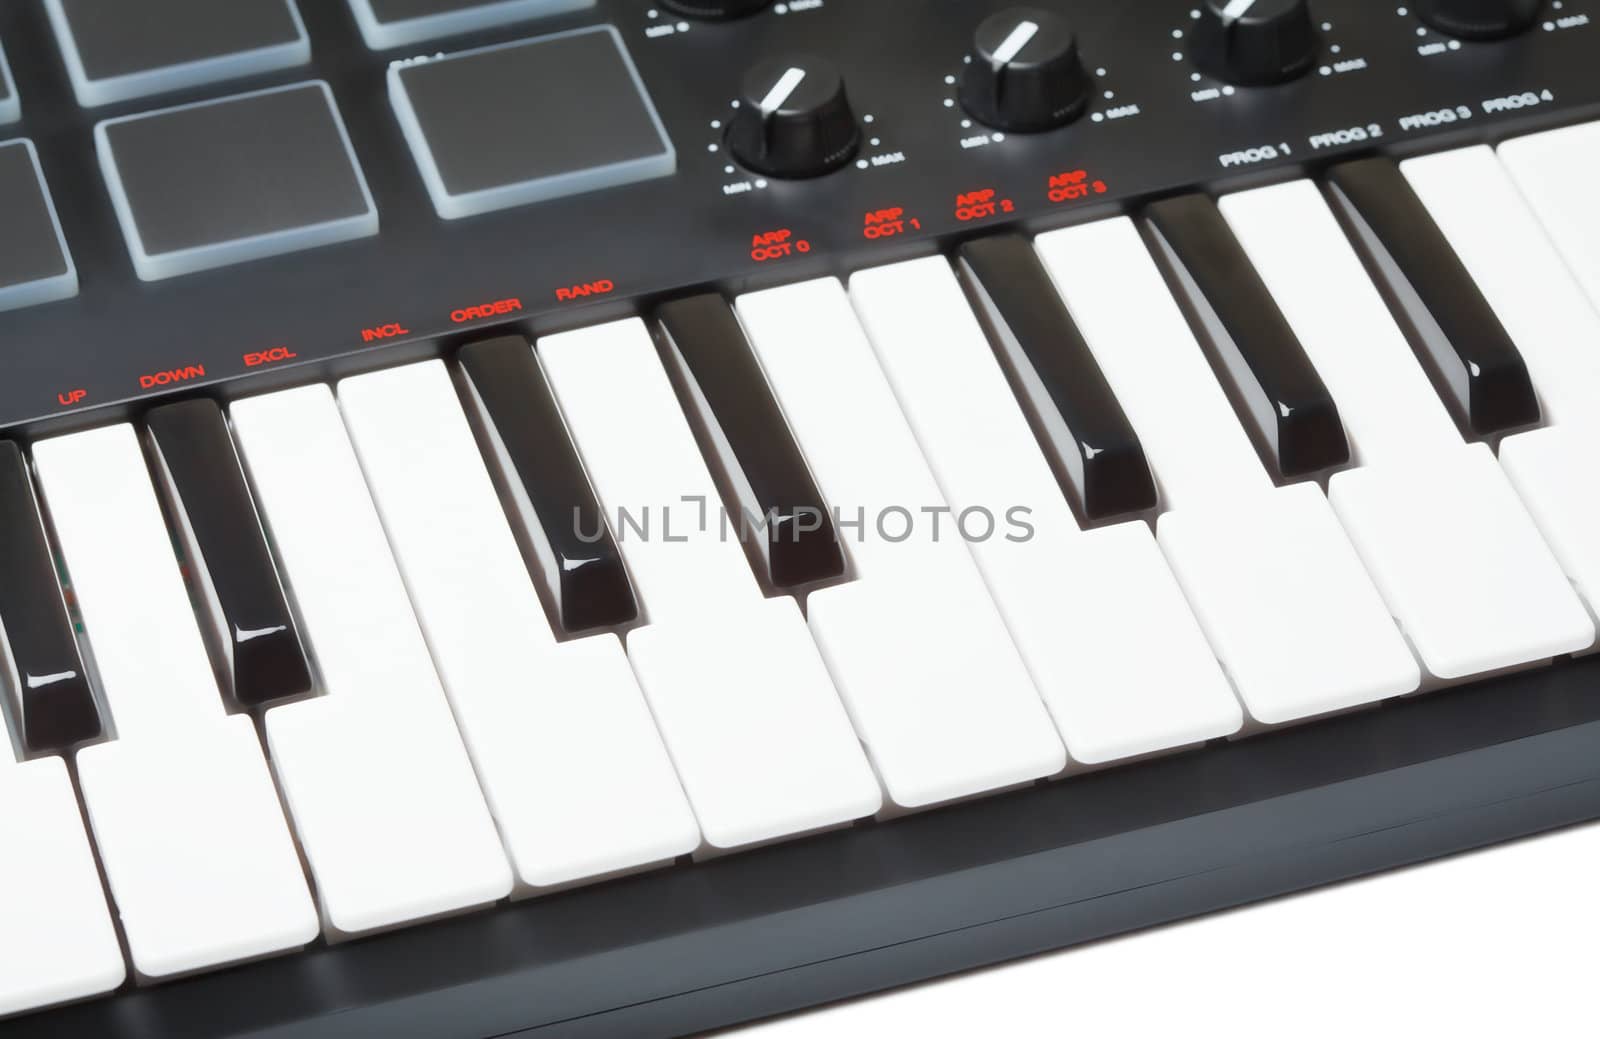 Digital Midi Keyboard by petr_malyshev